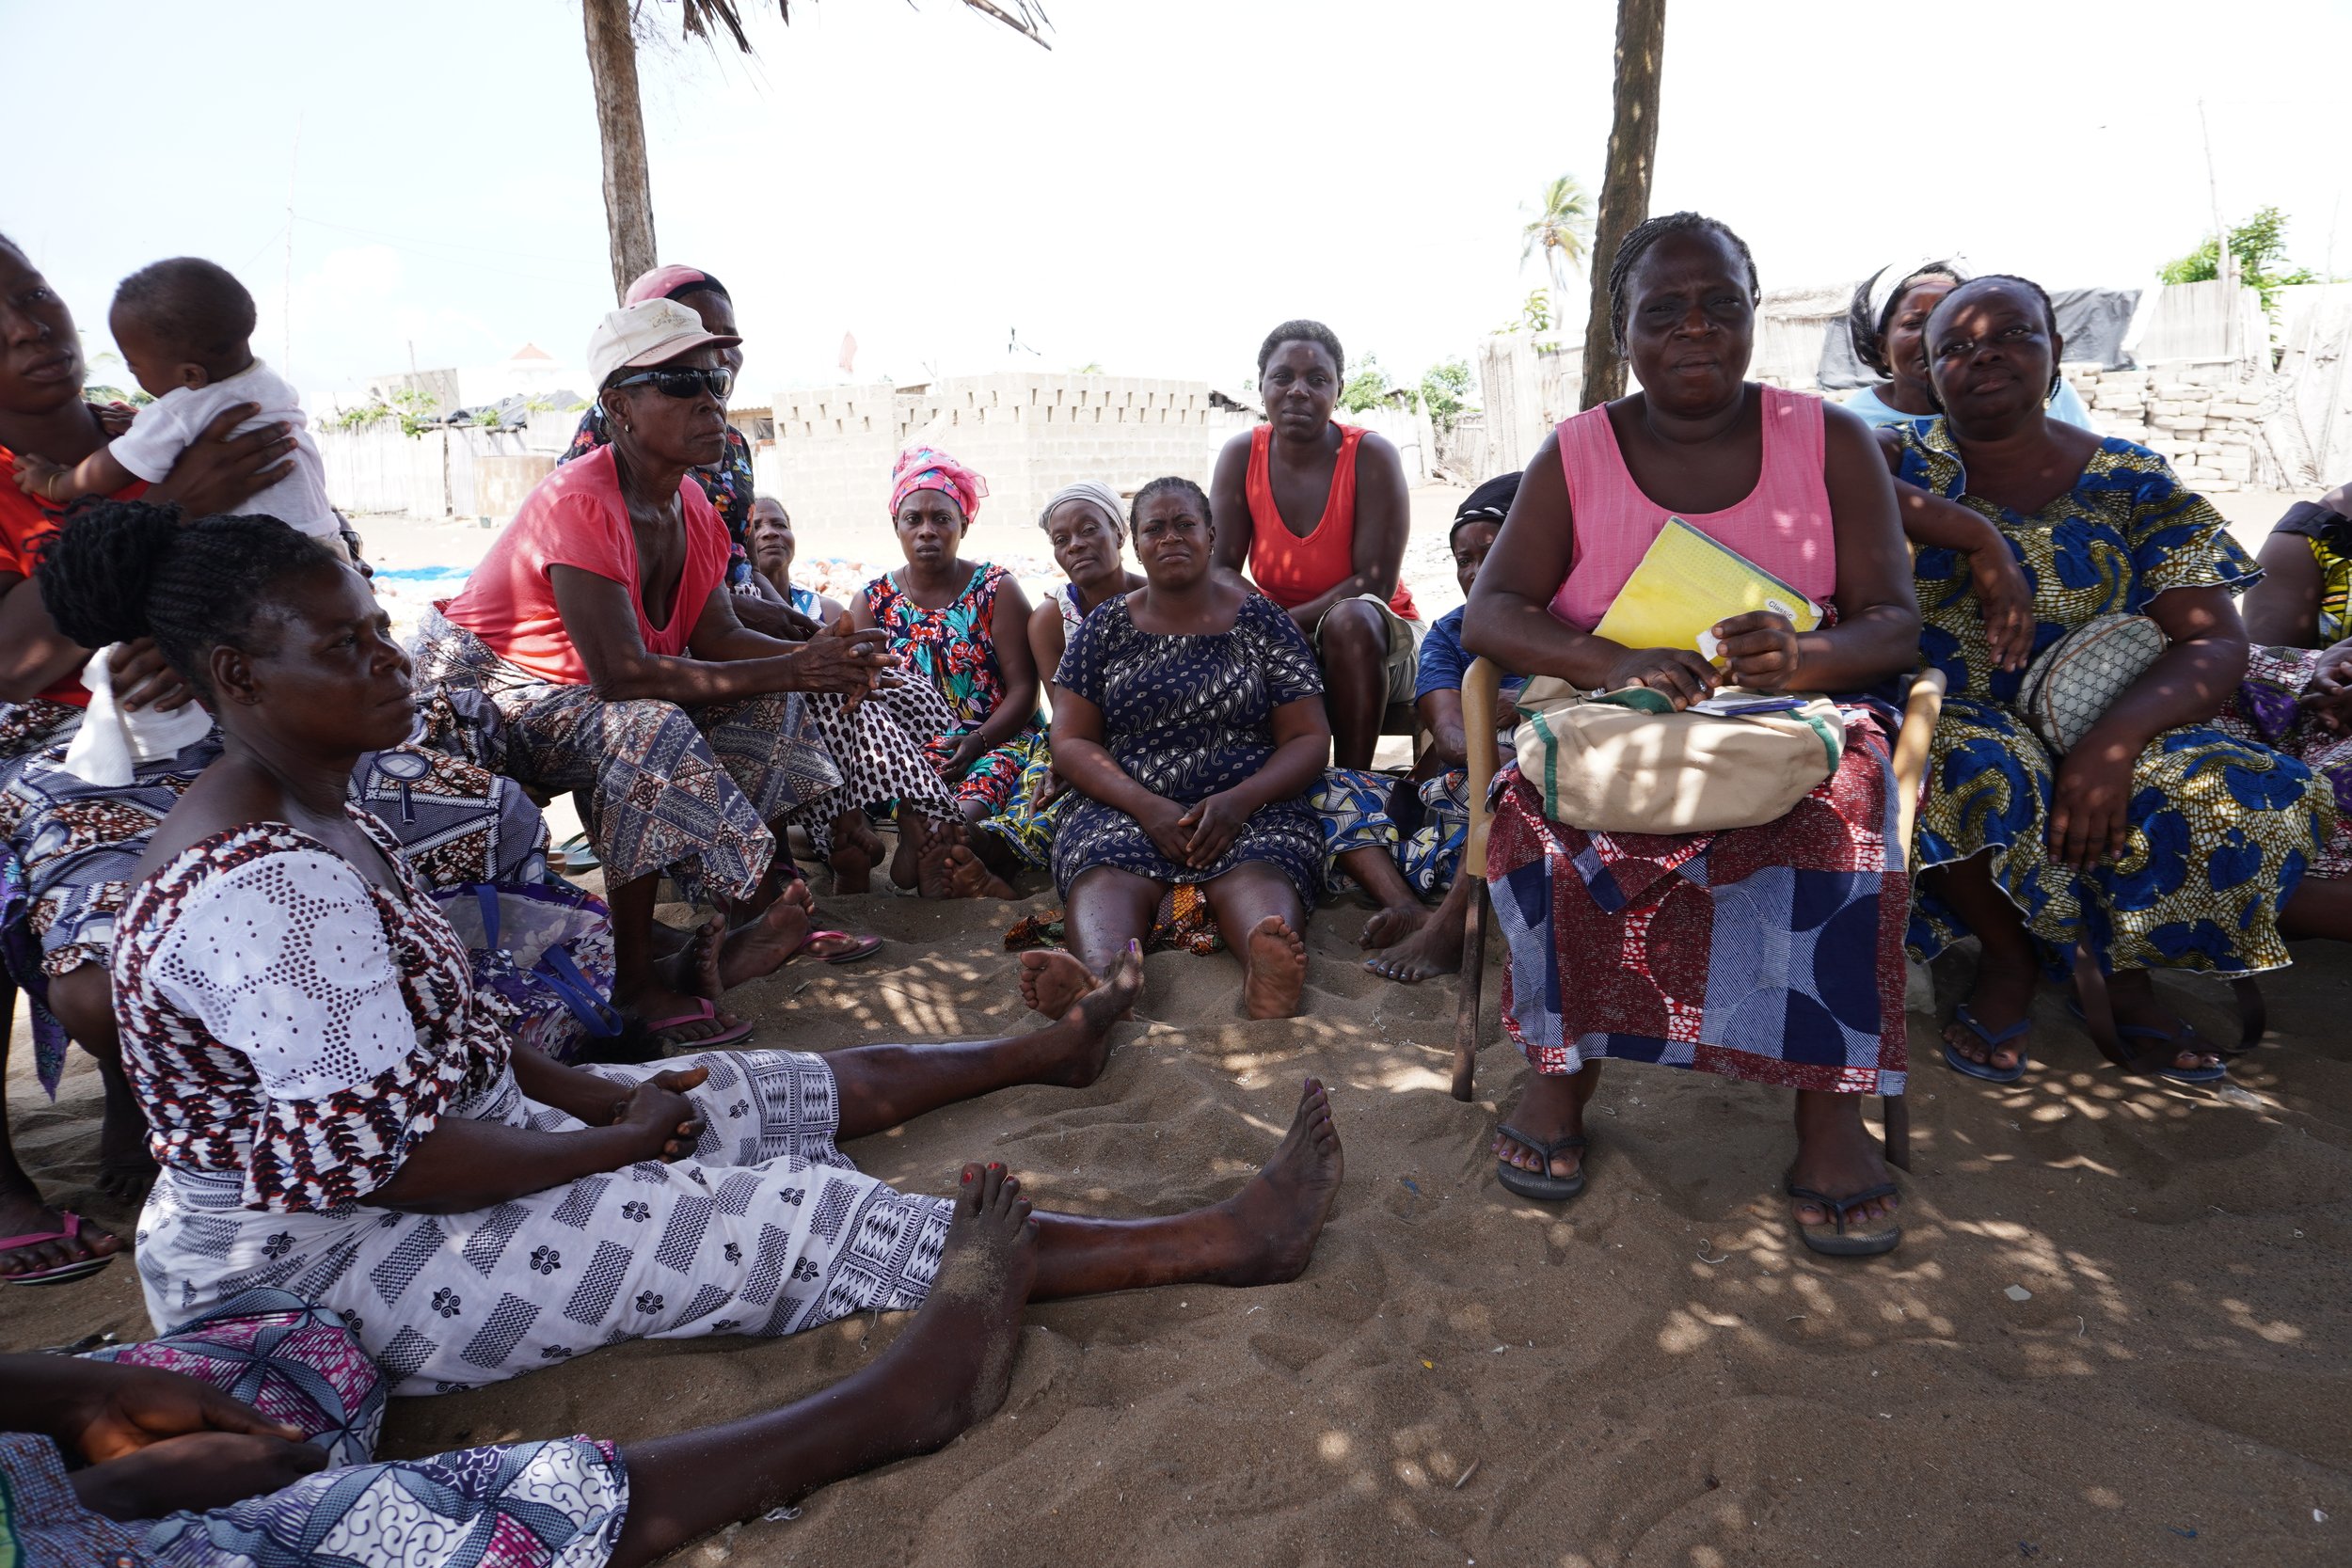  Les femmes de la coopérative Gbenondou, à Agoué dans la commune de Grand-Popo, sont principalement des mareyeuses. En premier plan avec son cahier jaune, la secrétaire Fernande Ayina nous explique le fonctionnement de la coopérative qui existe depui